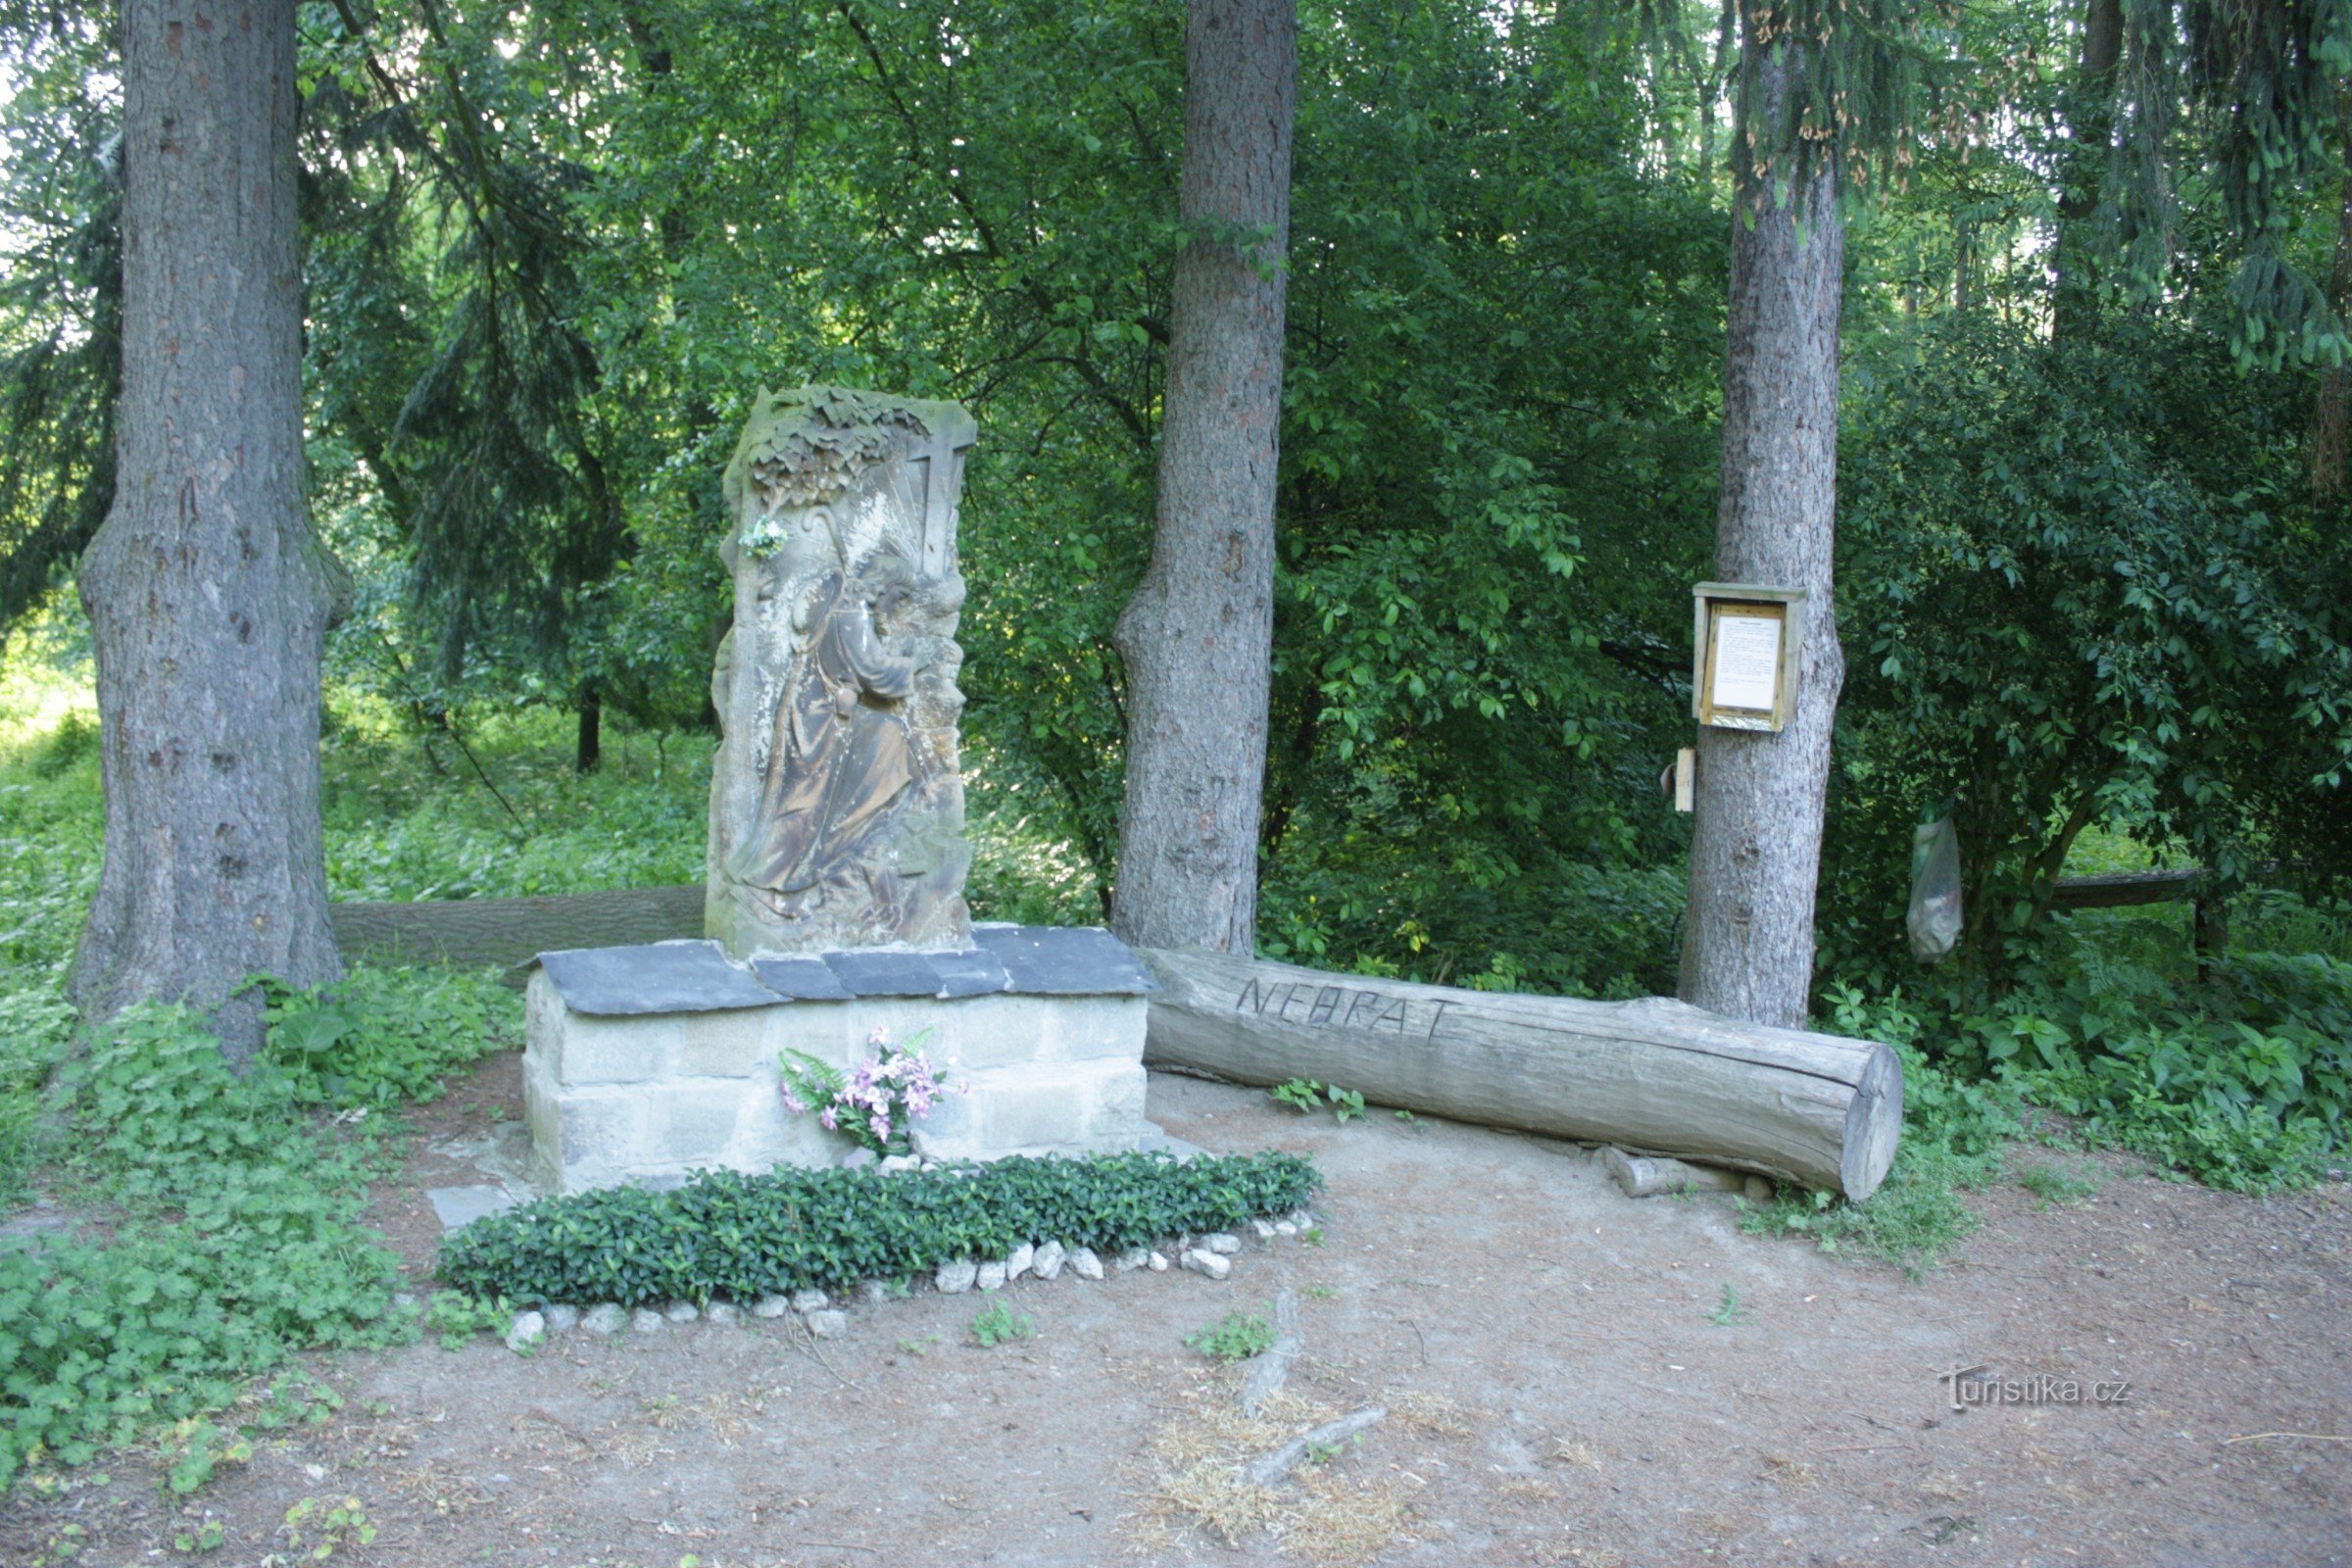 Kődombormű Szent. Jakub a Kojetín melletti ártéri erdőben